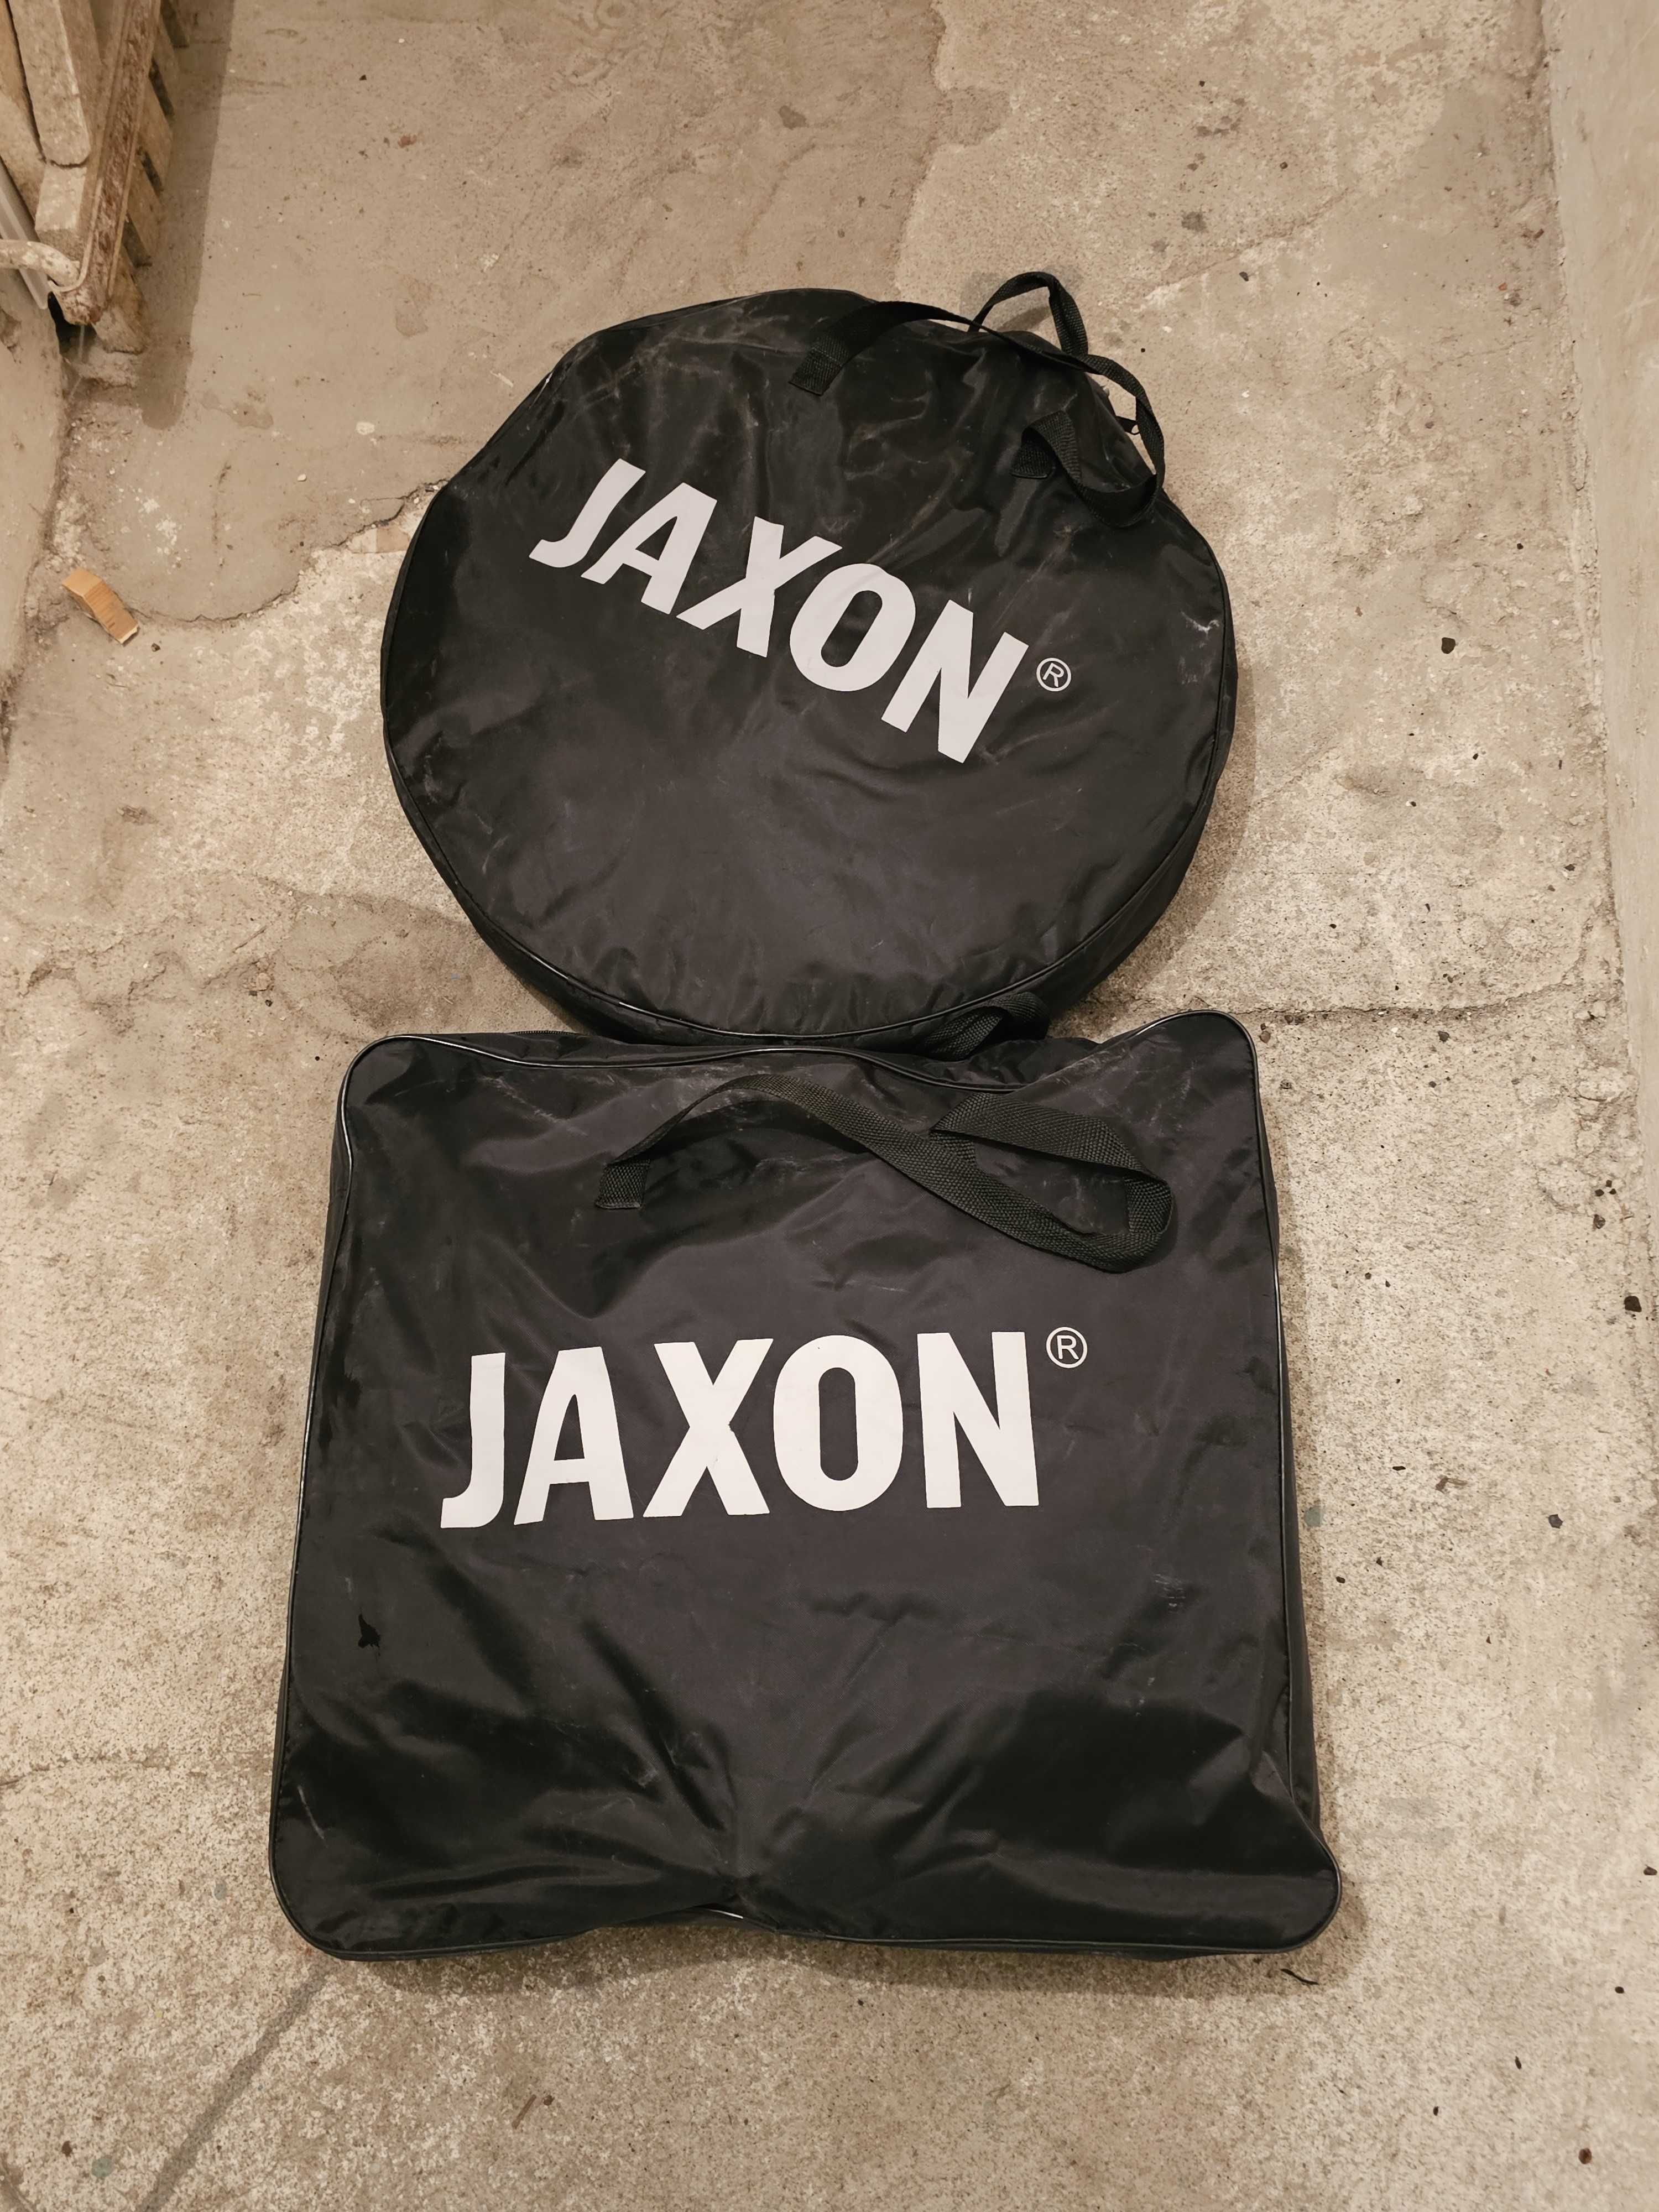 SIatki zawodnicze wyczynowe Jaxon